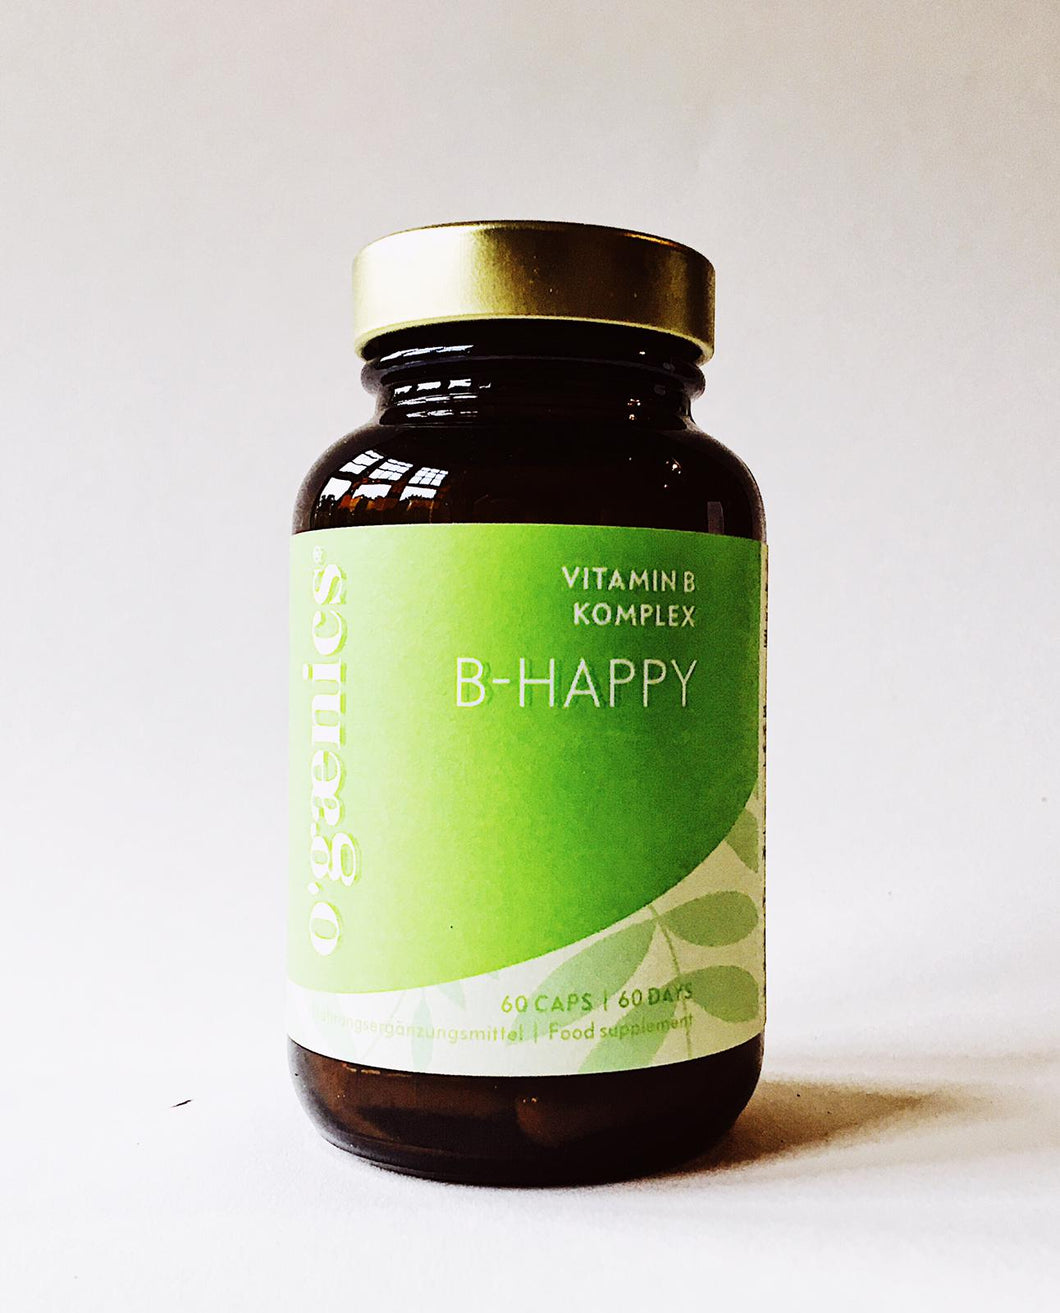 Vitamin B Komplex: B-Happy